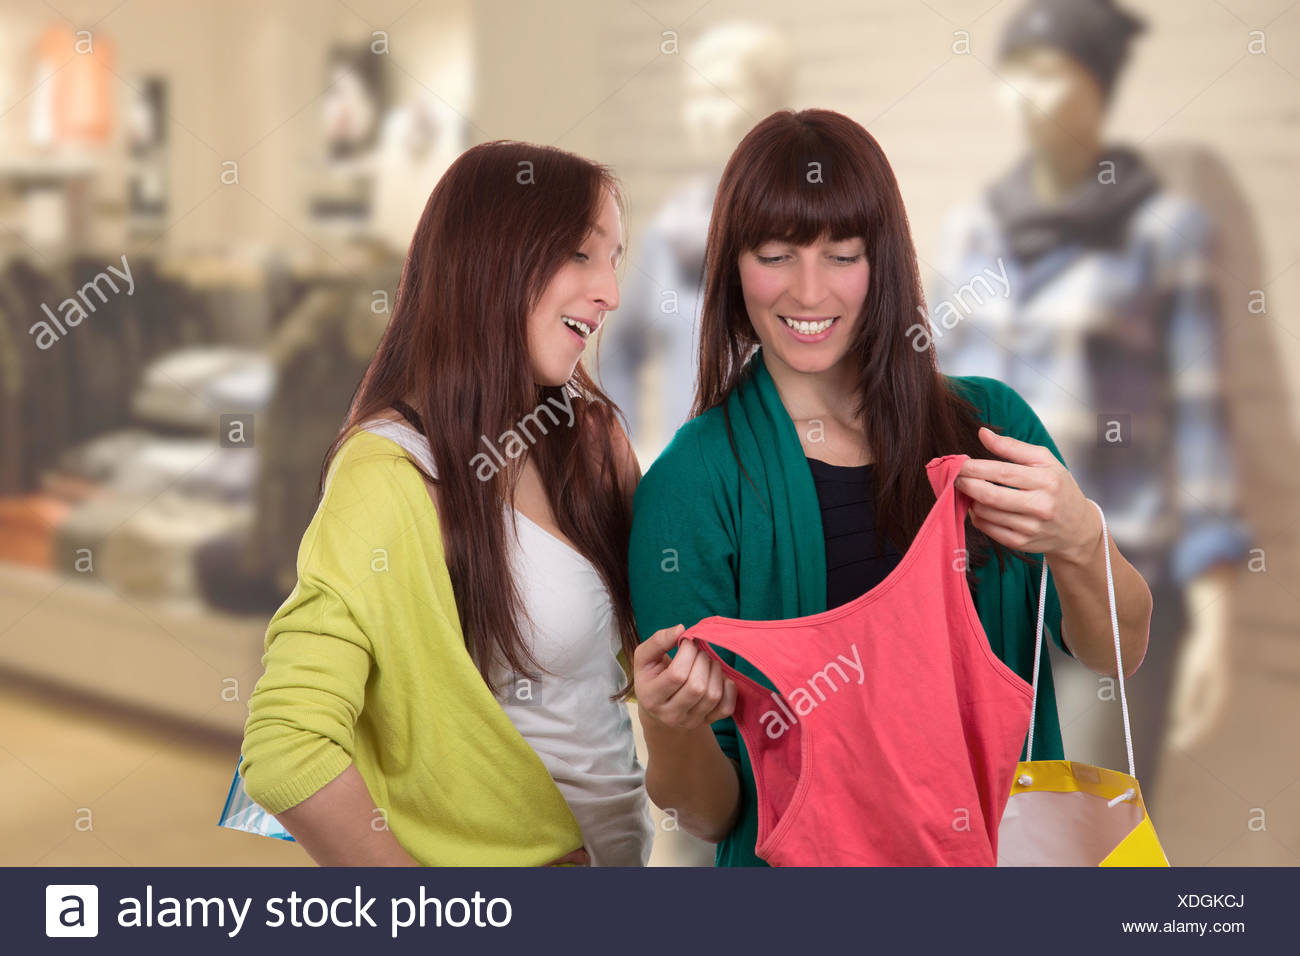 Zwei Junge Frauen Beim Einkaufen Von Kleidung Oder Klamotten Im Geschaft Oder Laden Stock Photo Alamy